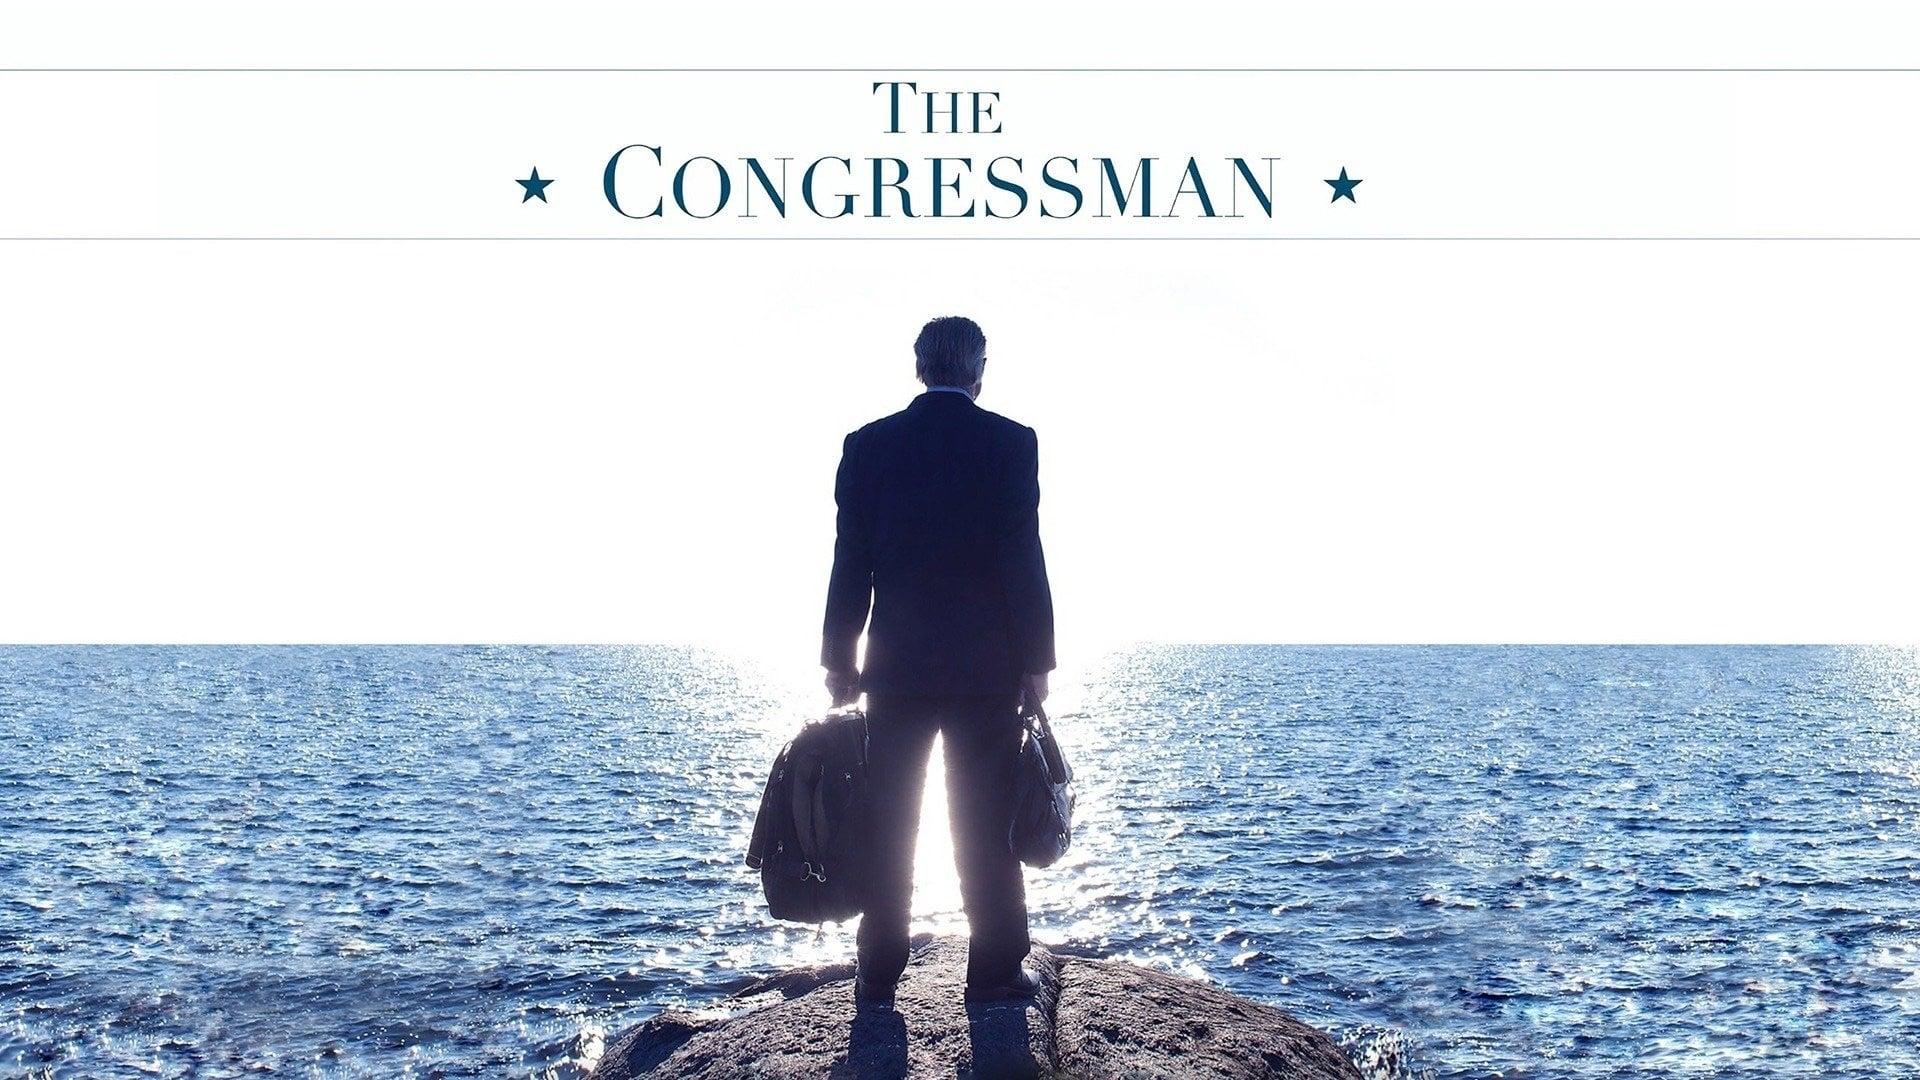 The Congressman backdrop